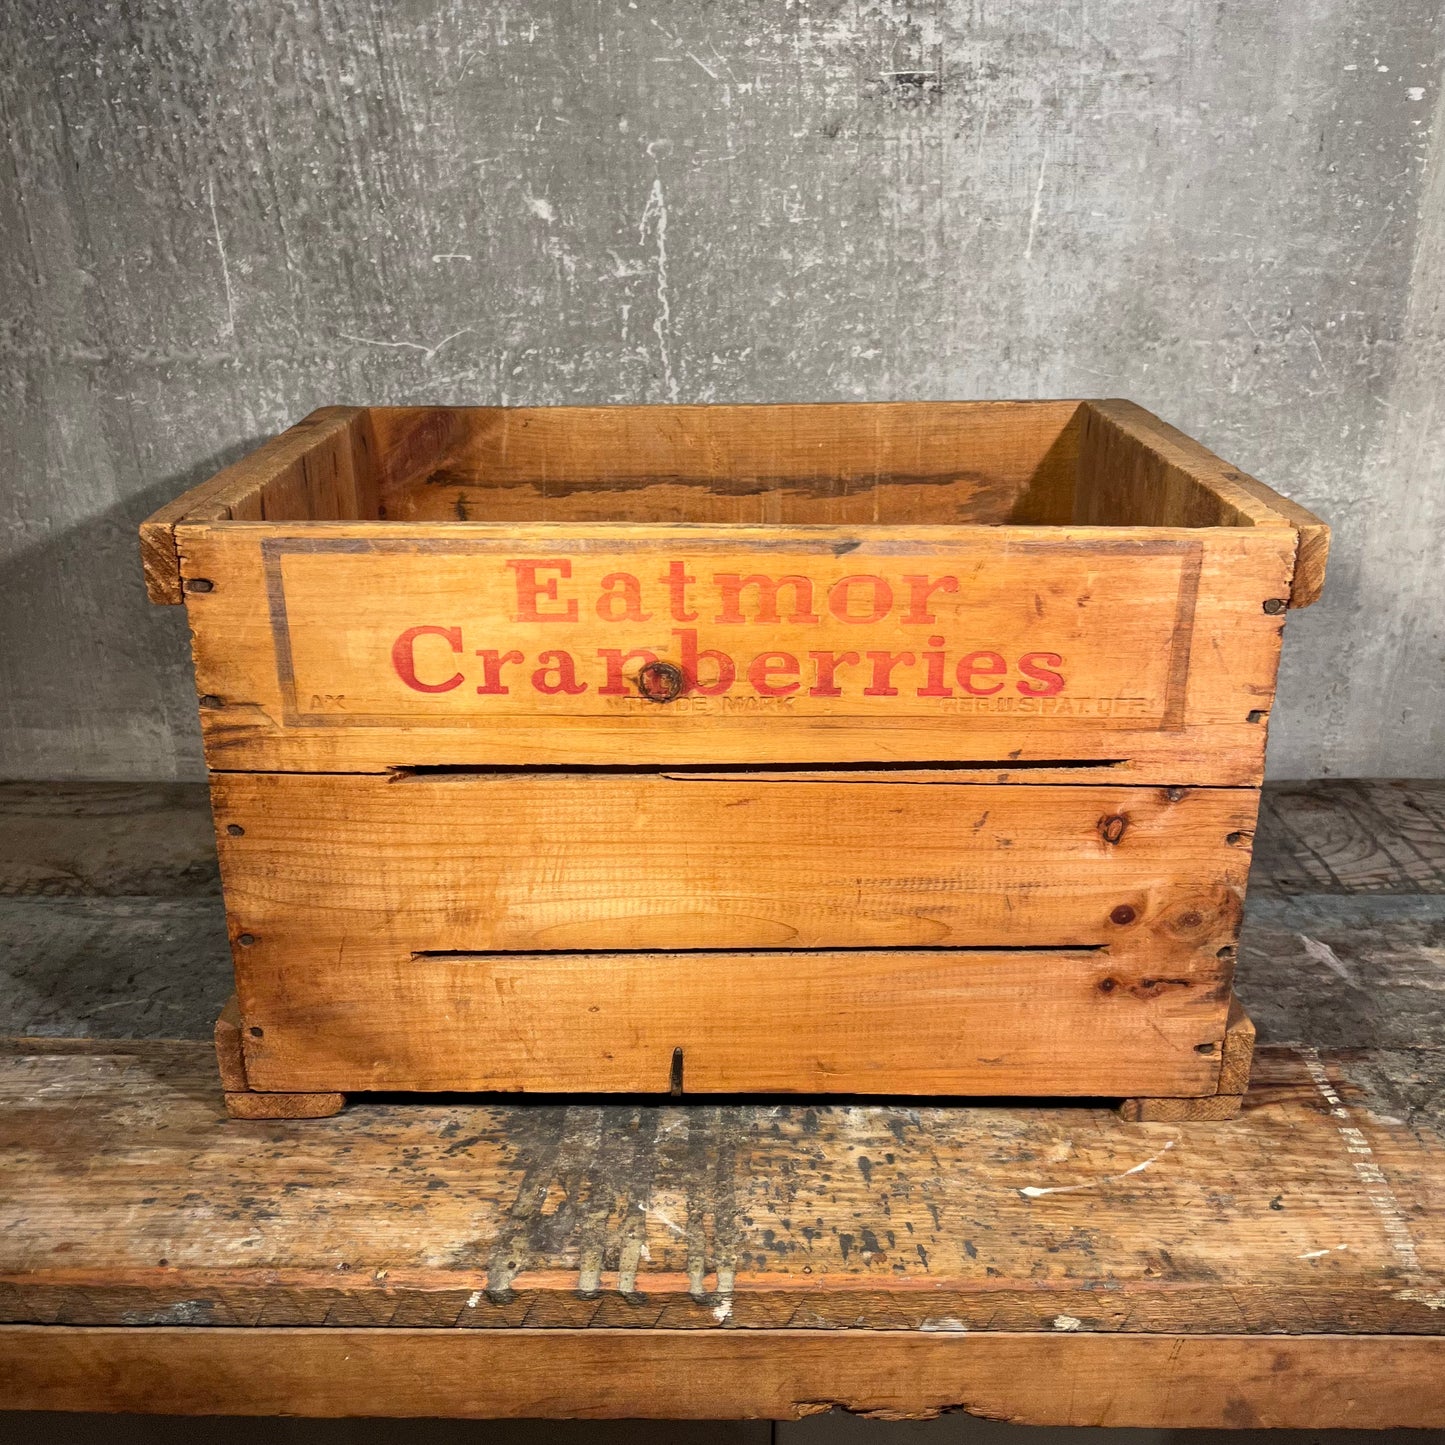 Eatmor Cranberries Crate